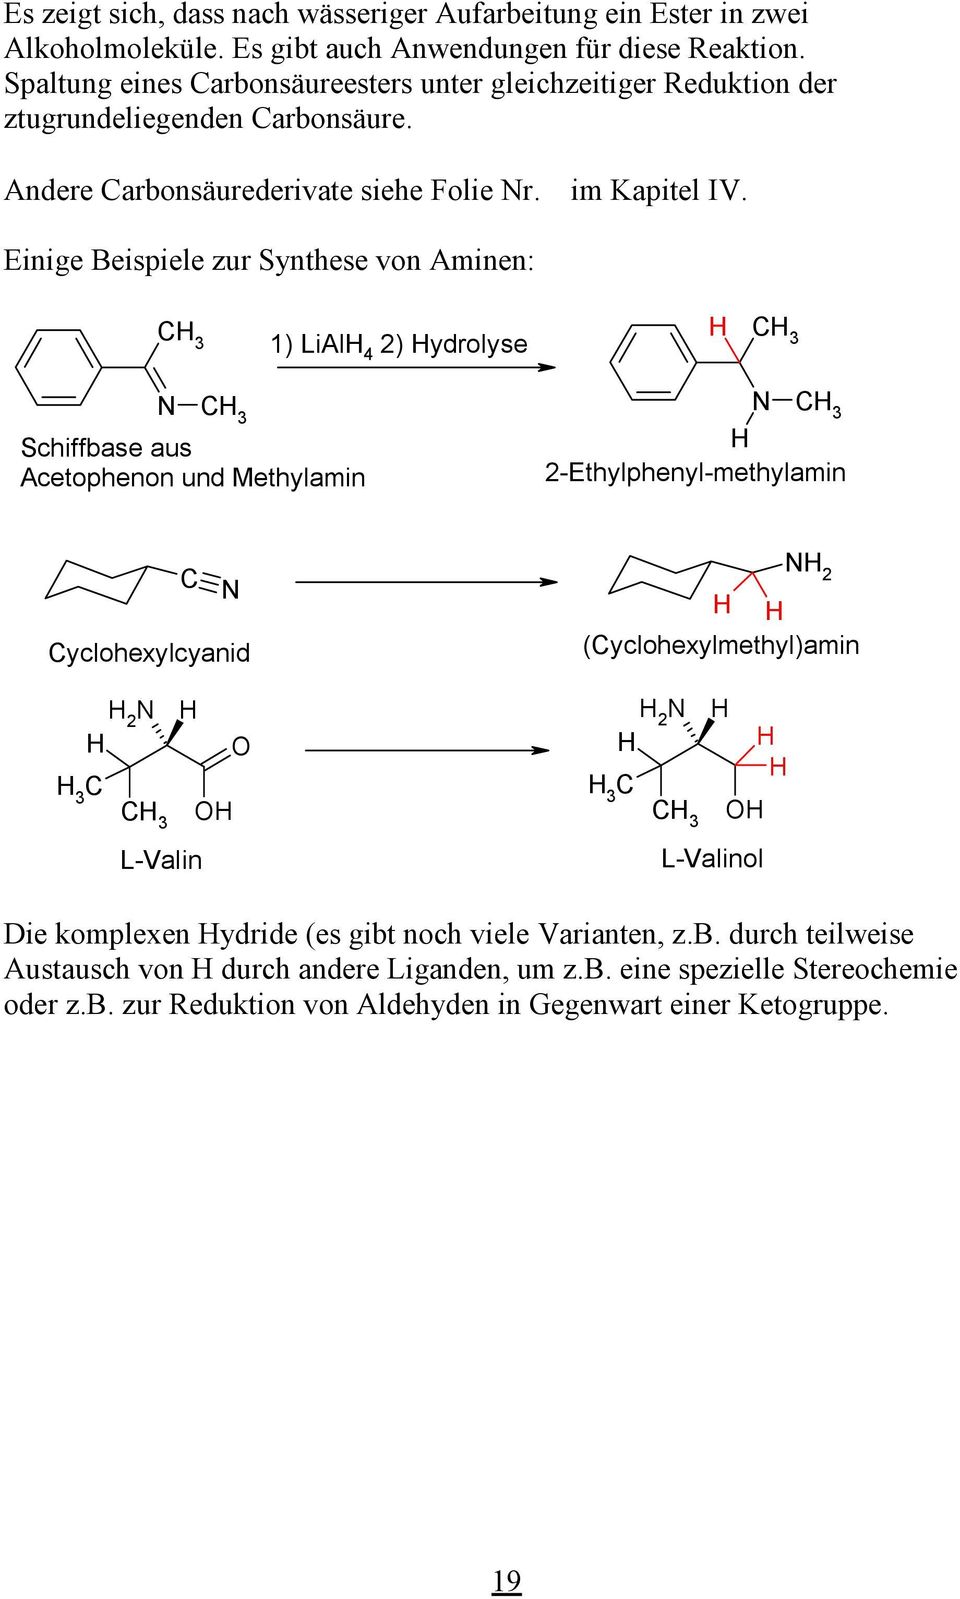 Einige Beispiele zur Synthese von Aminen: 3 1) LiAl 4 2) ydrolyse 3 3 Schiffbase aus Acetophenon und Methylamin 3 2-Ethylphenyl-methylamin 2 yclohexylcyanid